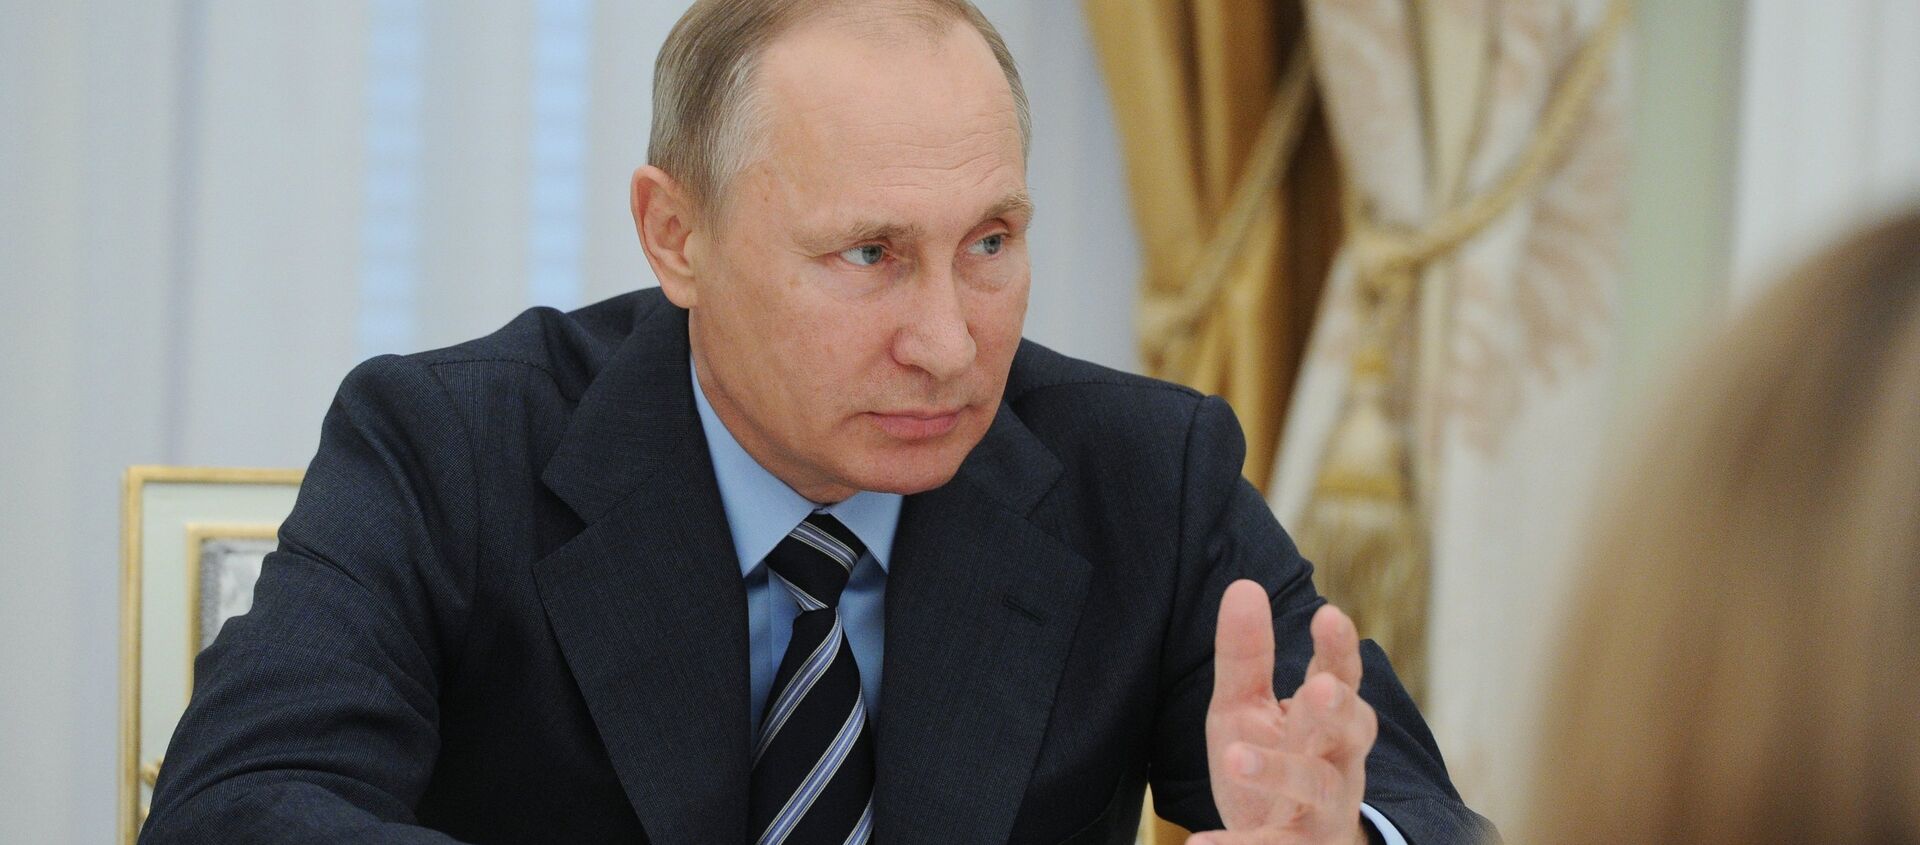 Президент РФ В. Путин провел ряд встреч по итогам прошедших выборов - Sputnik Южная Осетия, 1920, 23.09.2016